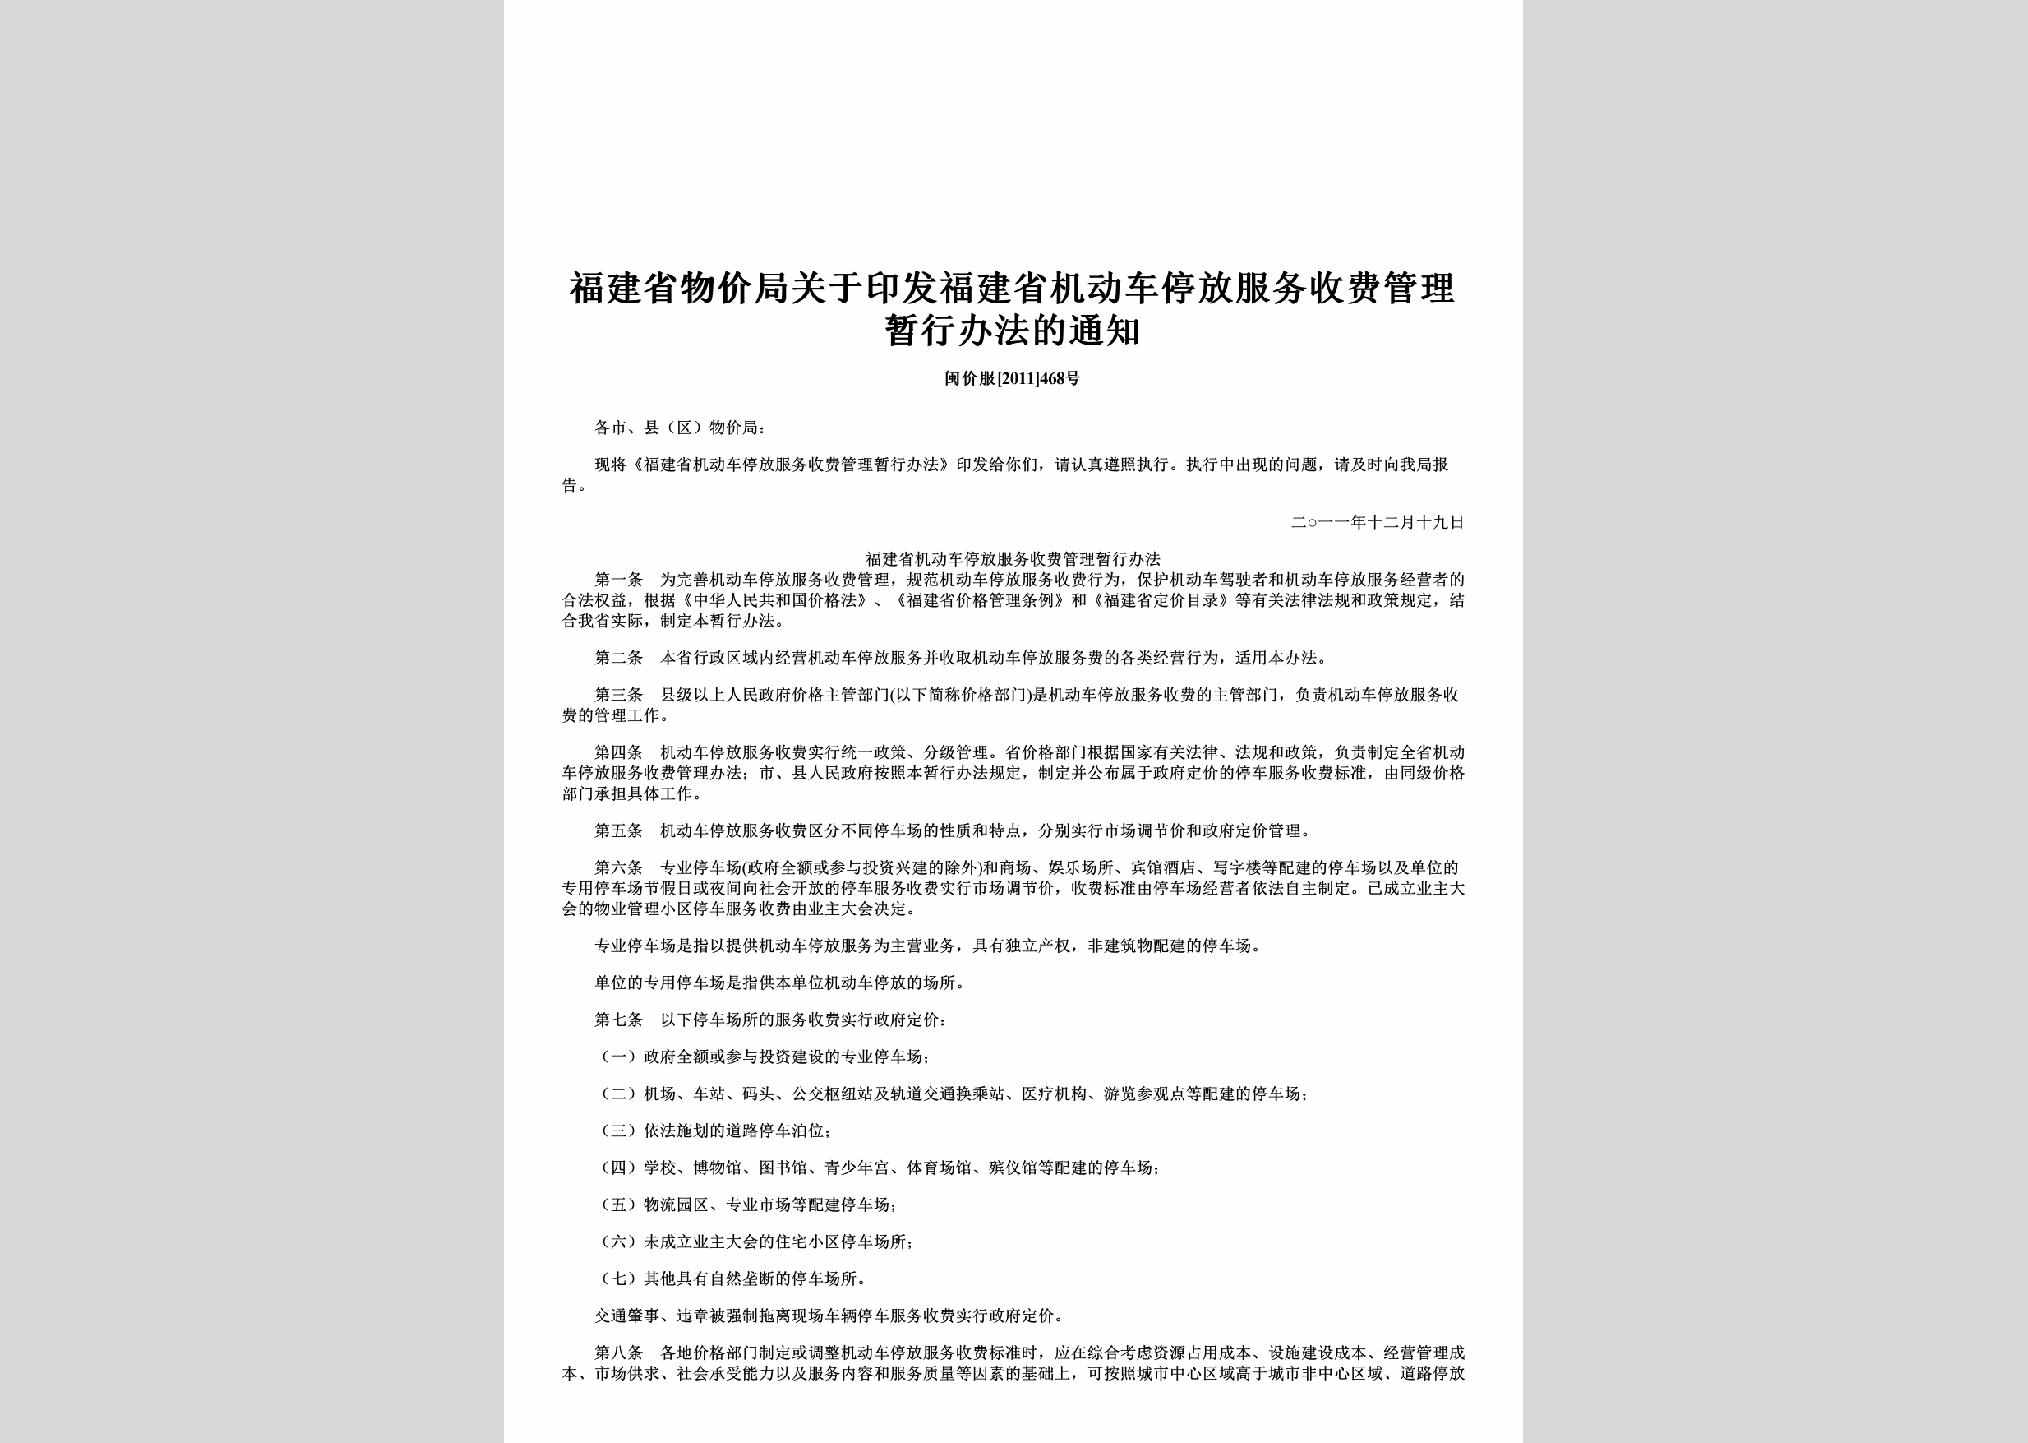 闽价服[2011]468号：关于印发福建省机动车停放服务收费管理暂行办法的通知